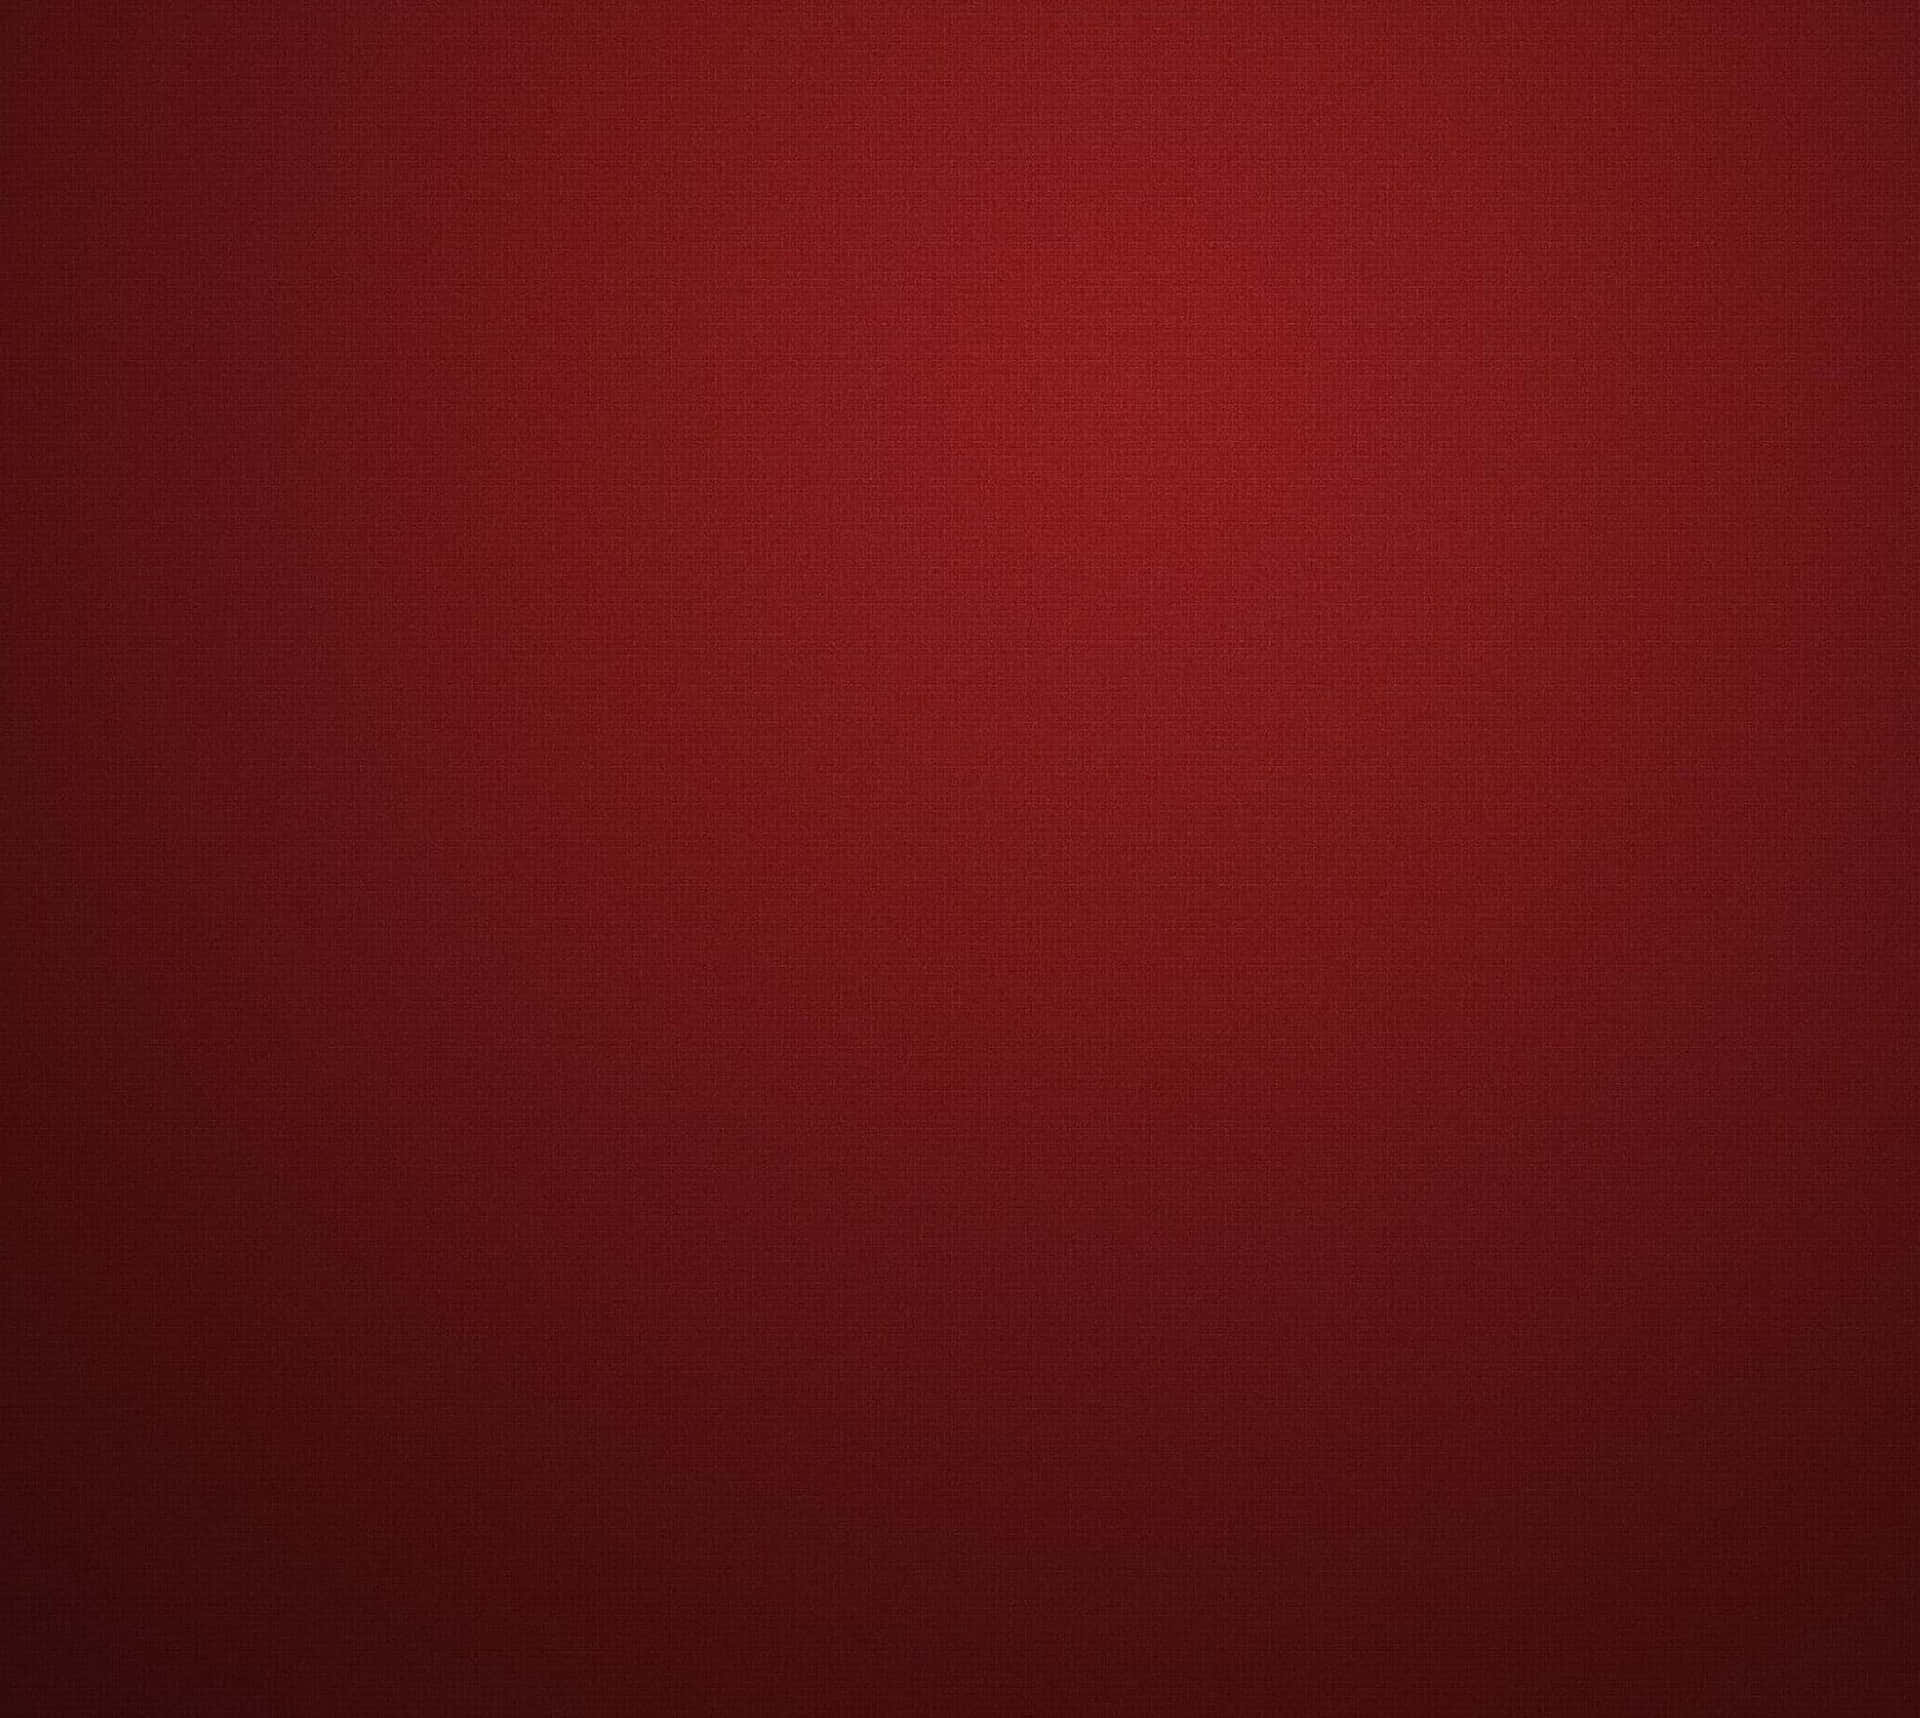 Dark Red Background Very Dark Red Texture